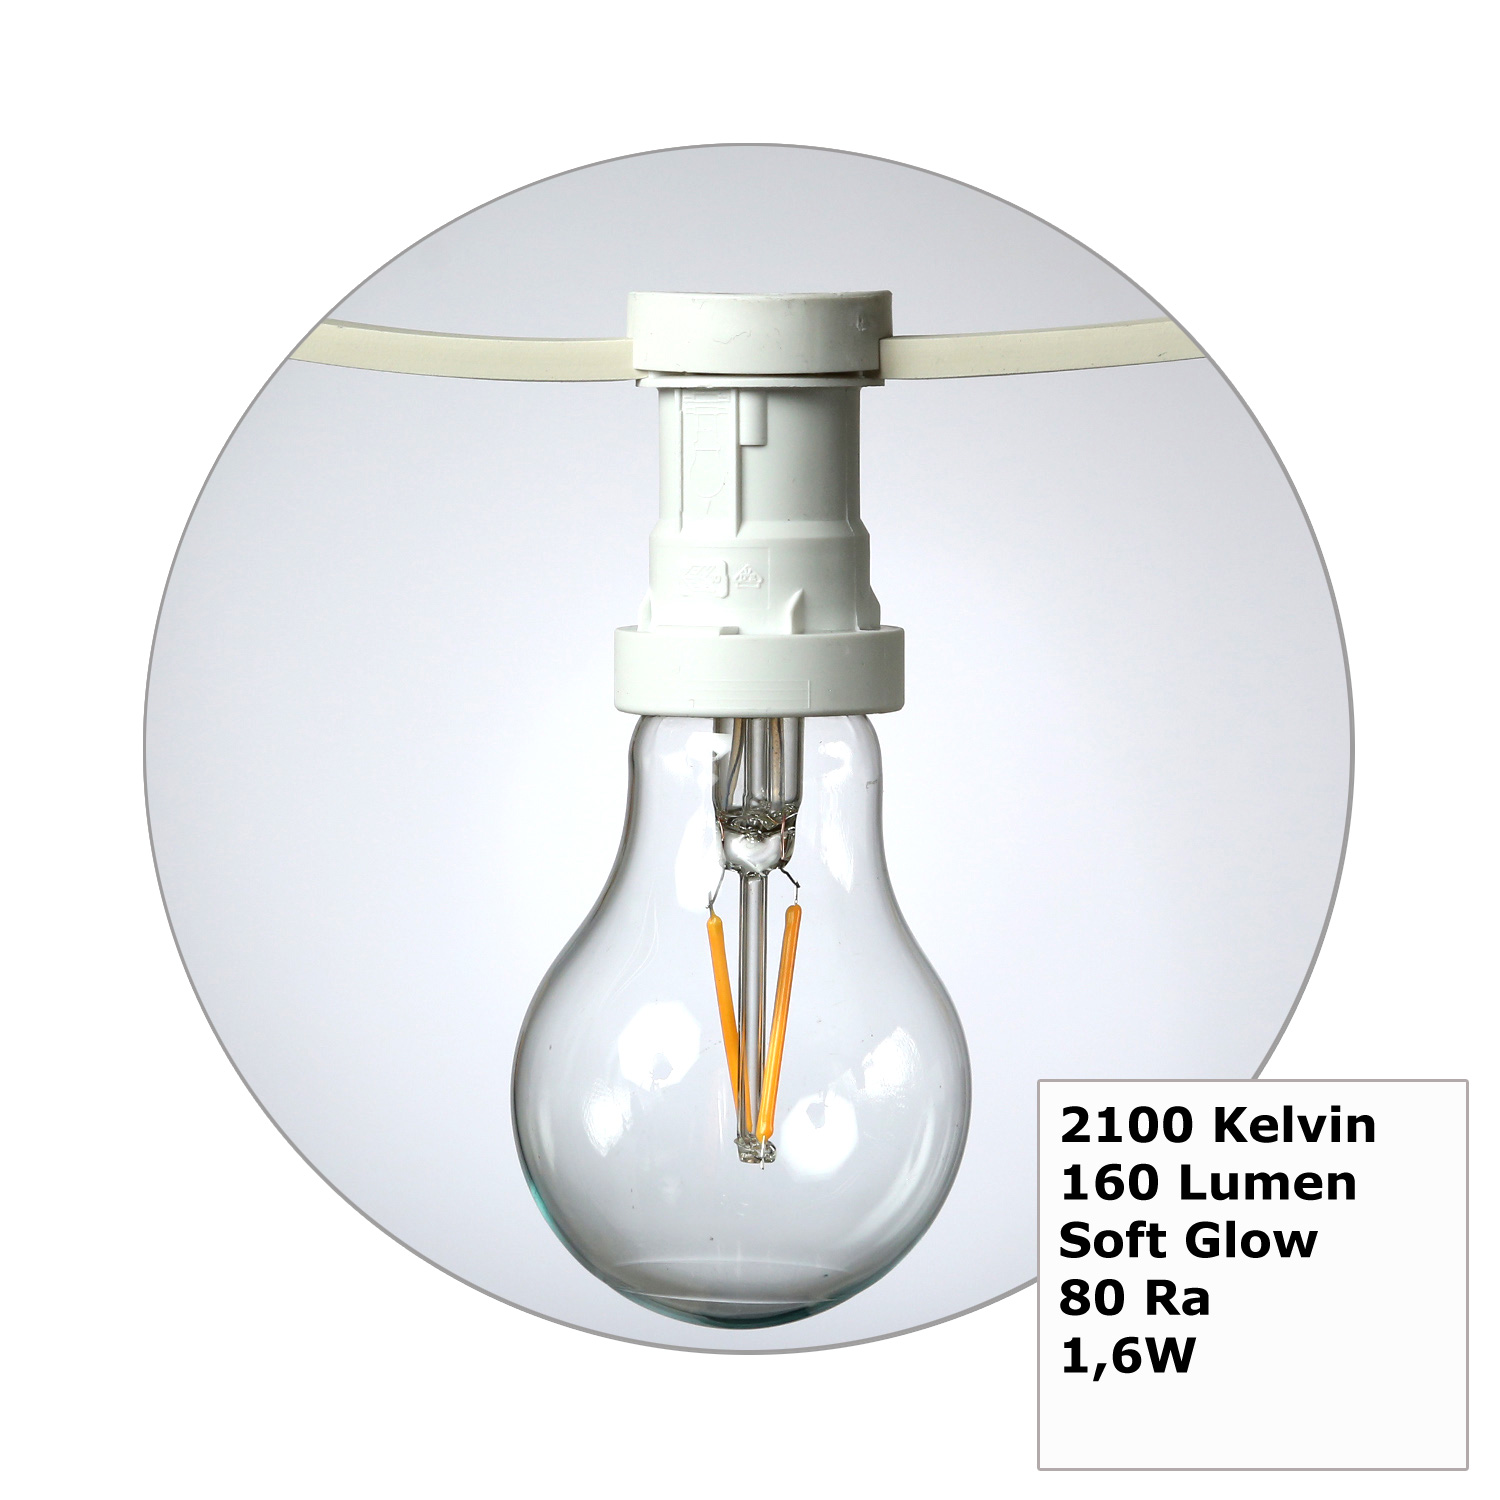 Illu-/Partylichterkette 30m - Außenlichterkette weiß - Made in Germany- 30 Edison LED Filamentlampen